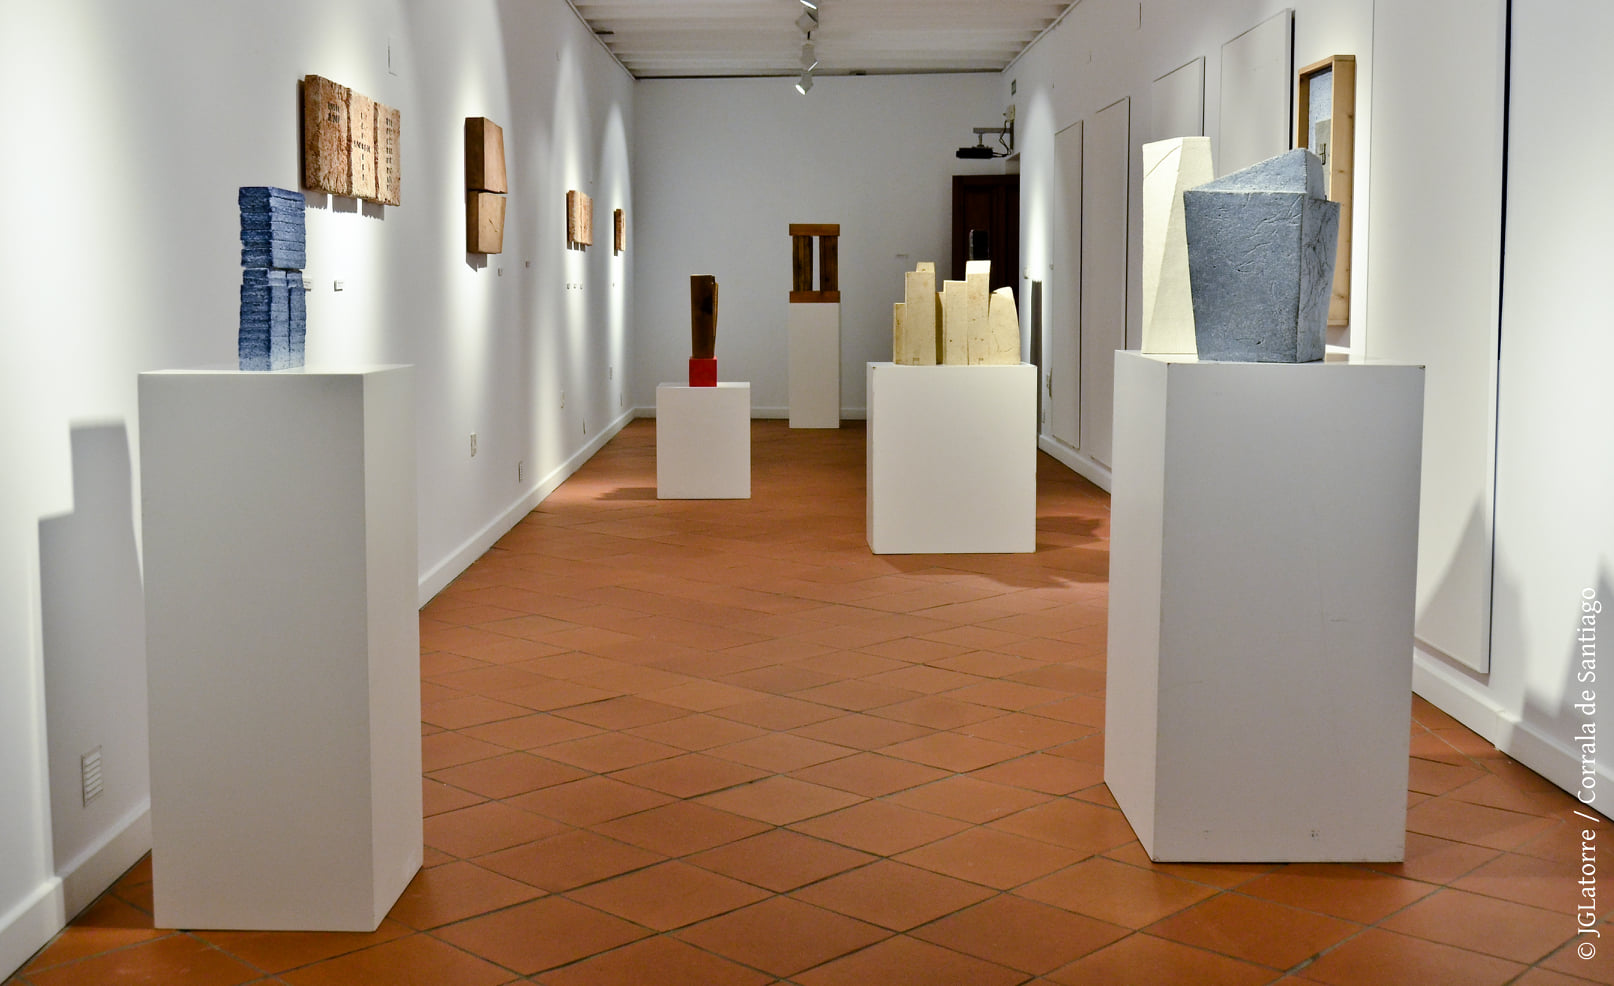 Sala de exposiciones | Agustín Ruiz de Almodóvar